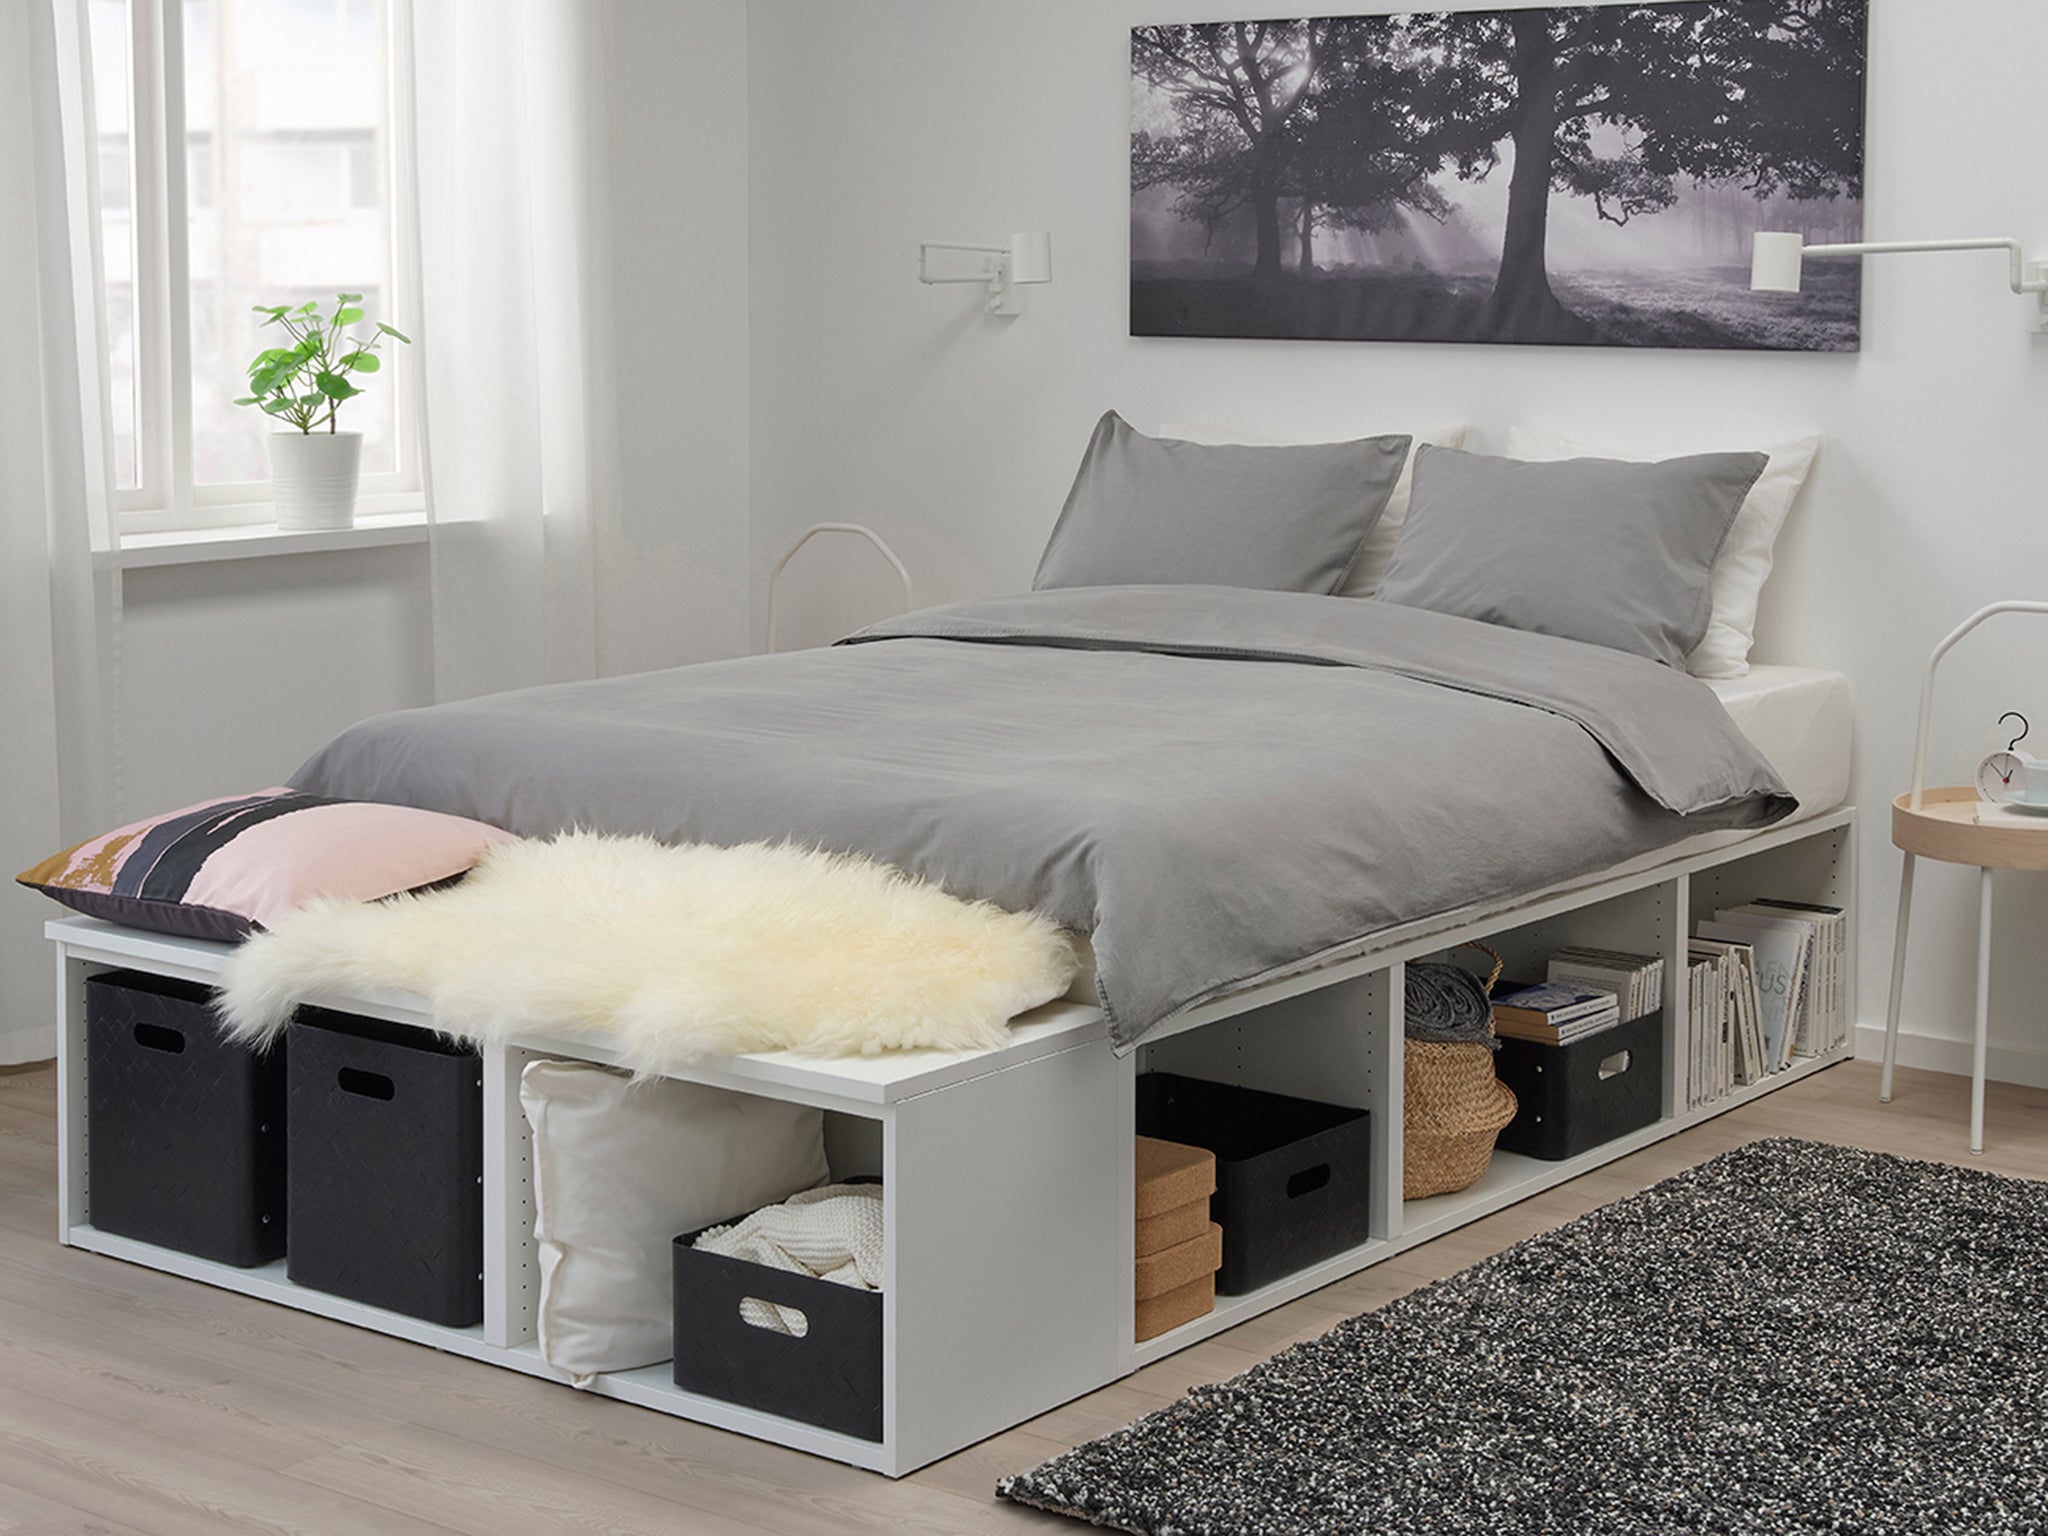 Ikea-indybest-best-storage-bed.jpg